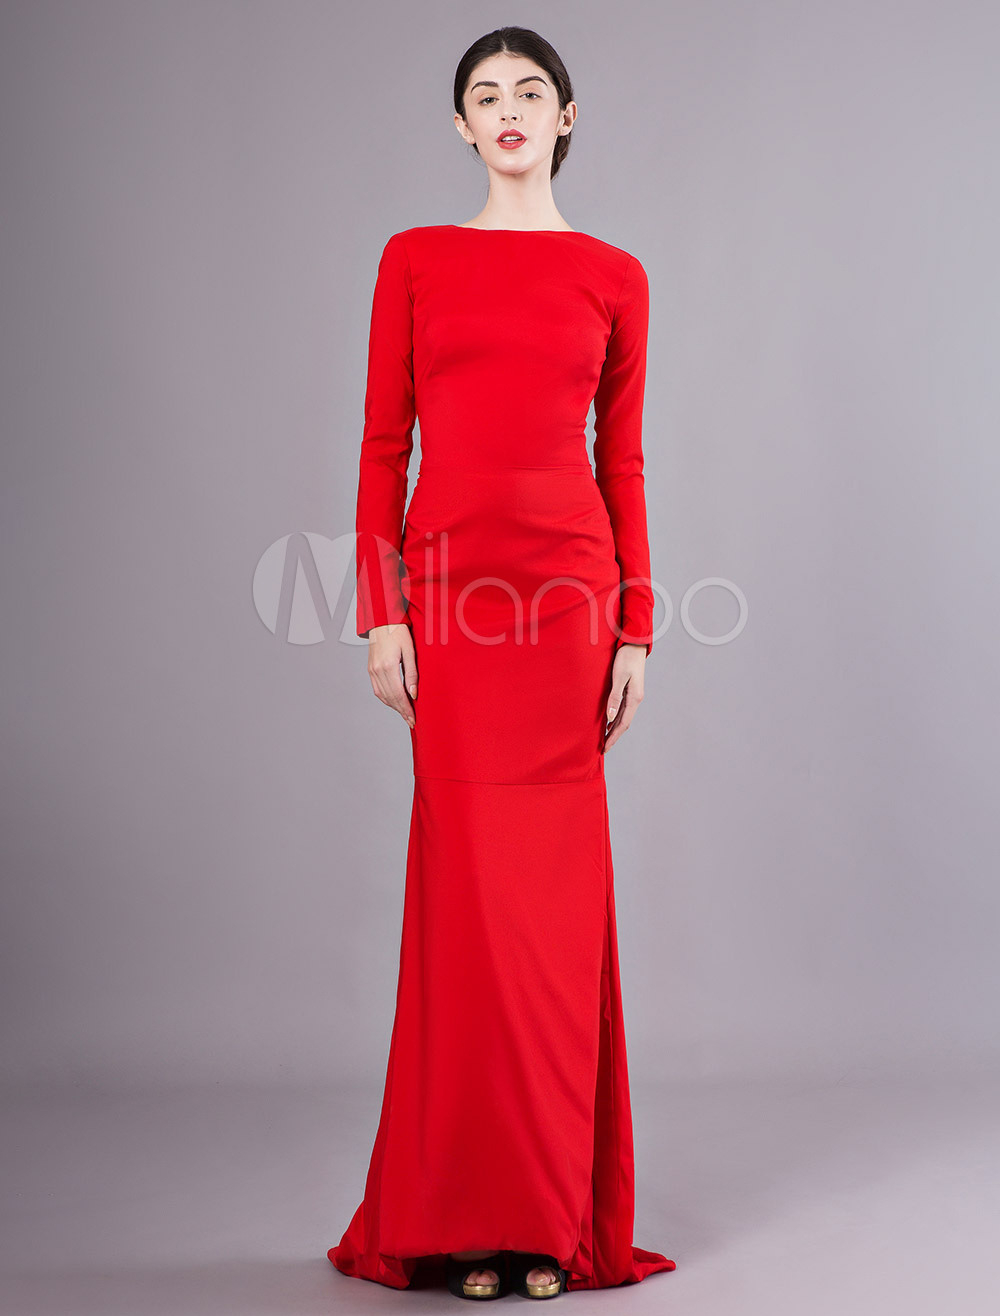 Genial Rote Kleider Galerie20 Schön Rote Kleider für 2019